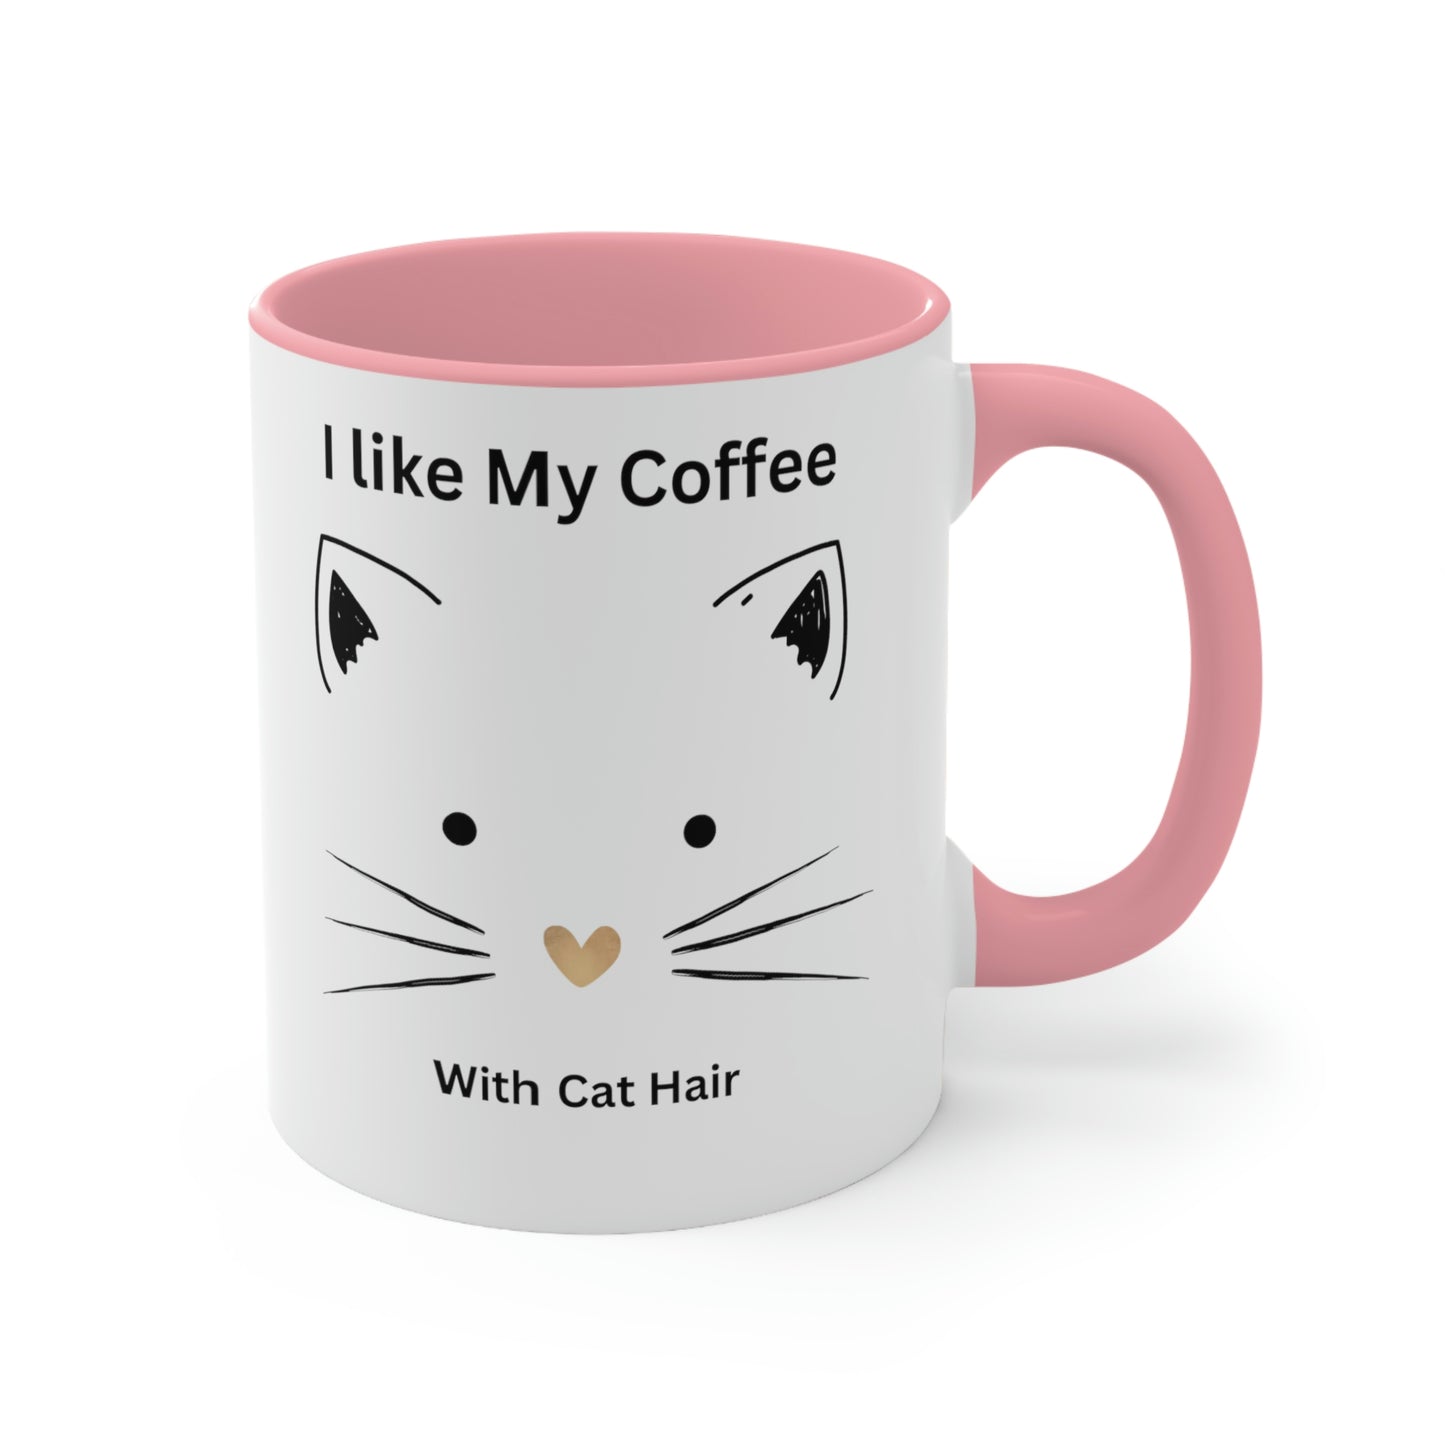 MarshLife by Shani Accent Mug - Cat Hair